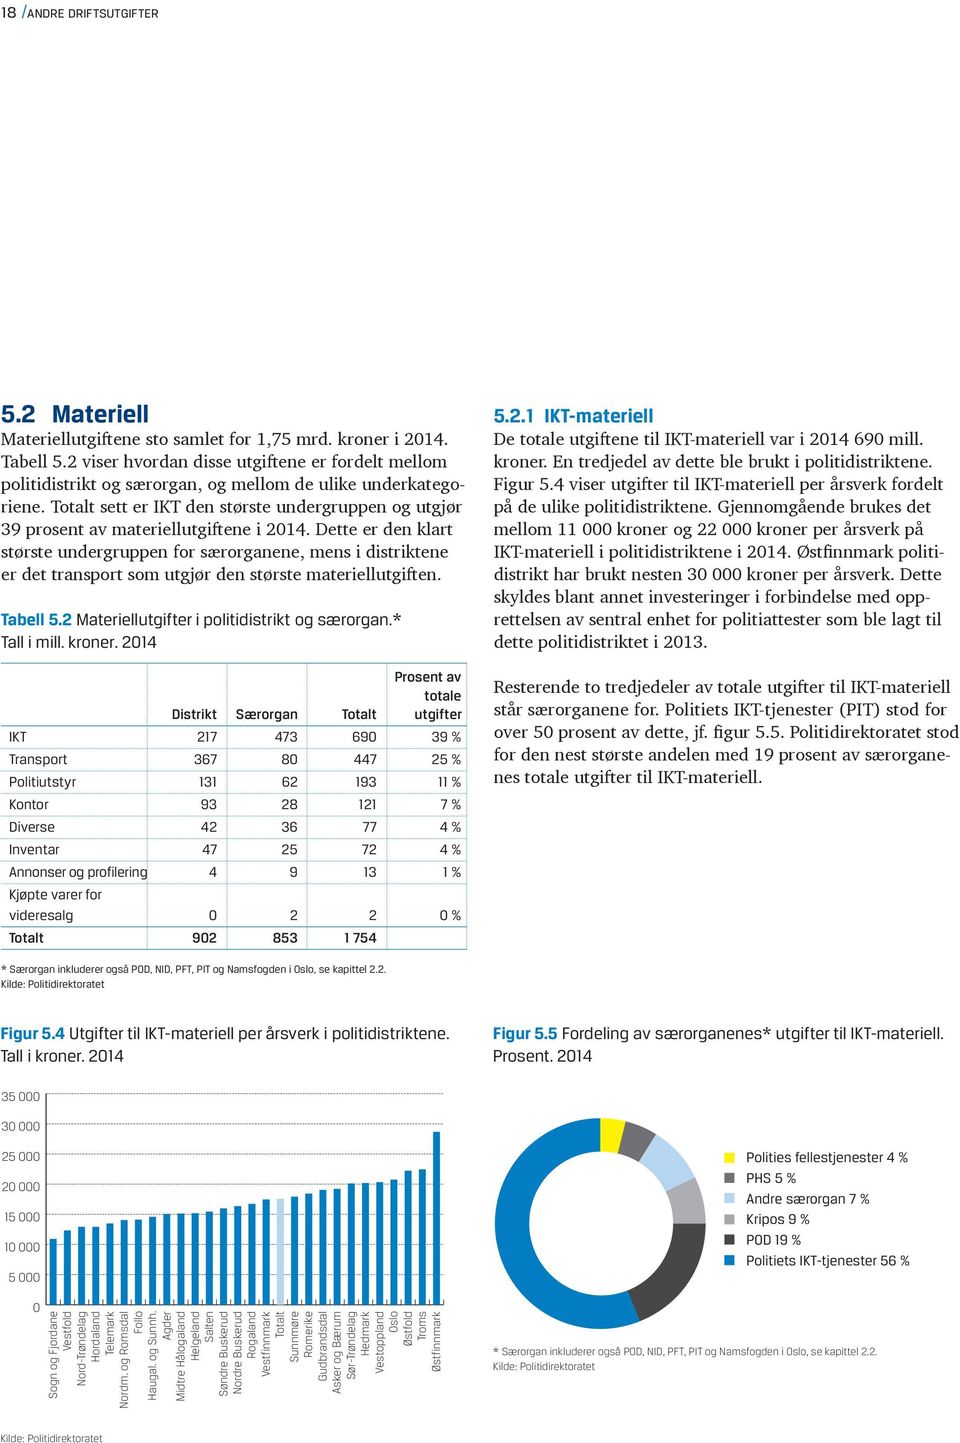 Totalt sett er IKT den største under gruppen og utgjør 39 prosent av materiellutgiftene i 214.